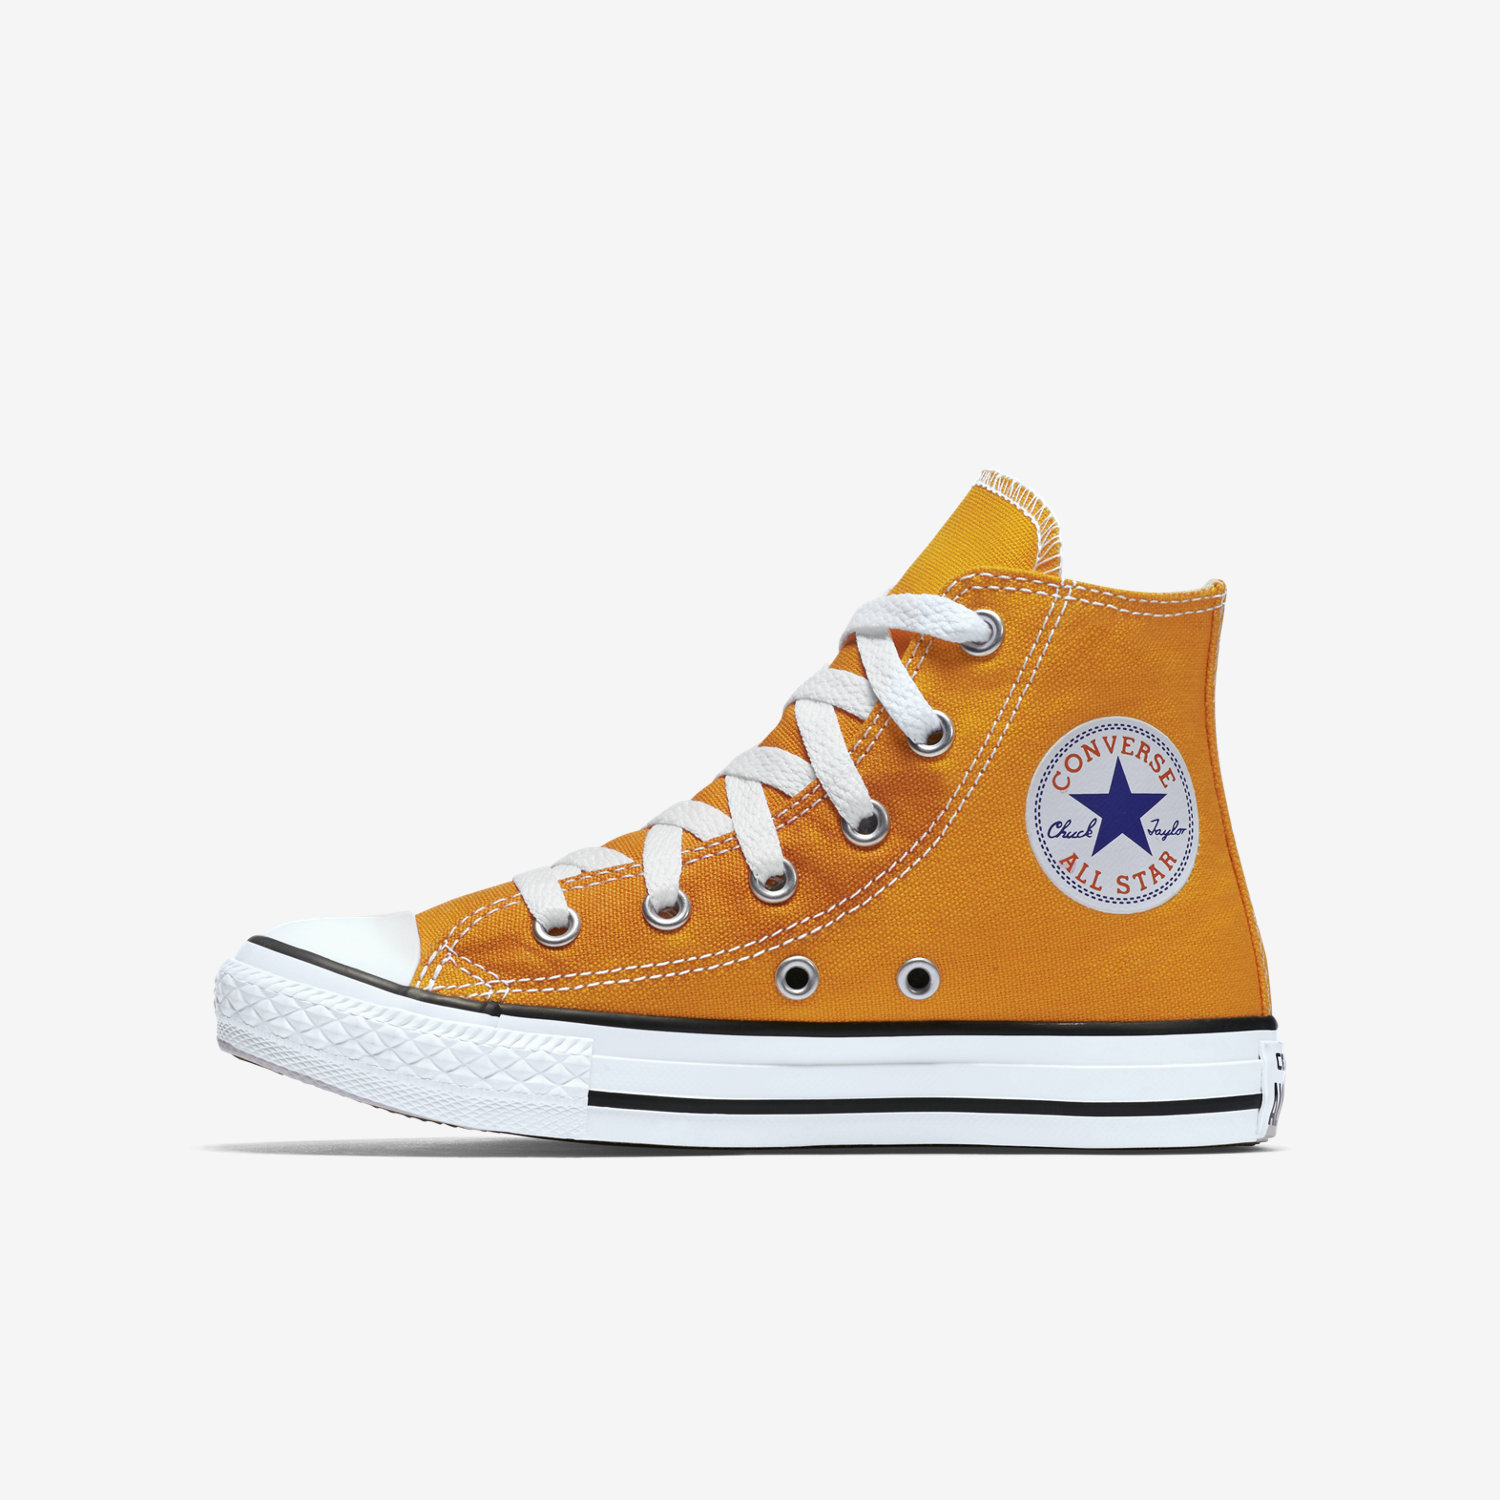 παπουτσια outdoor για κοριτσια Converse Chuck Taylor All Star ψηλα πορτοκαλι 44293823QD